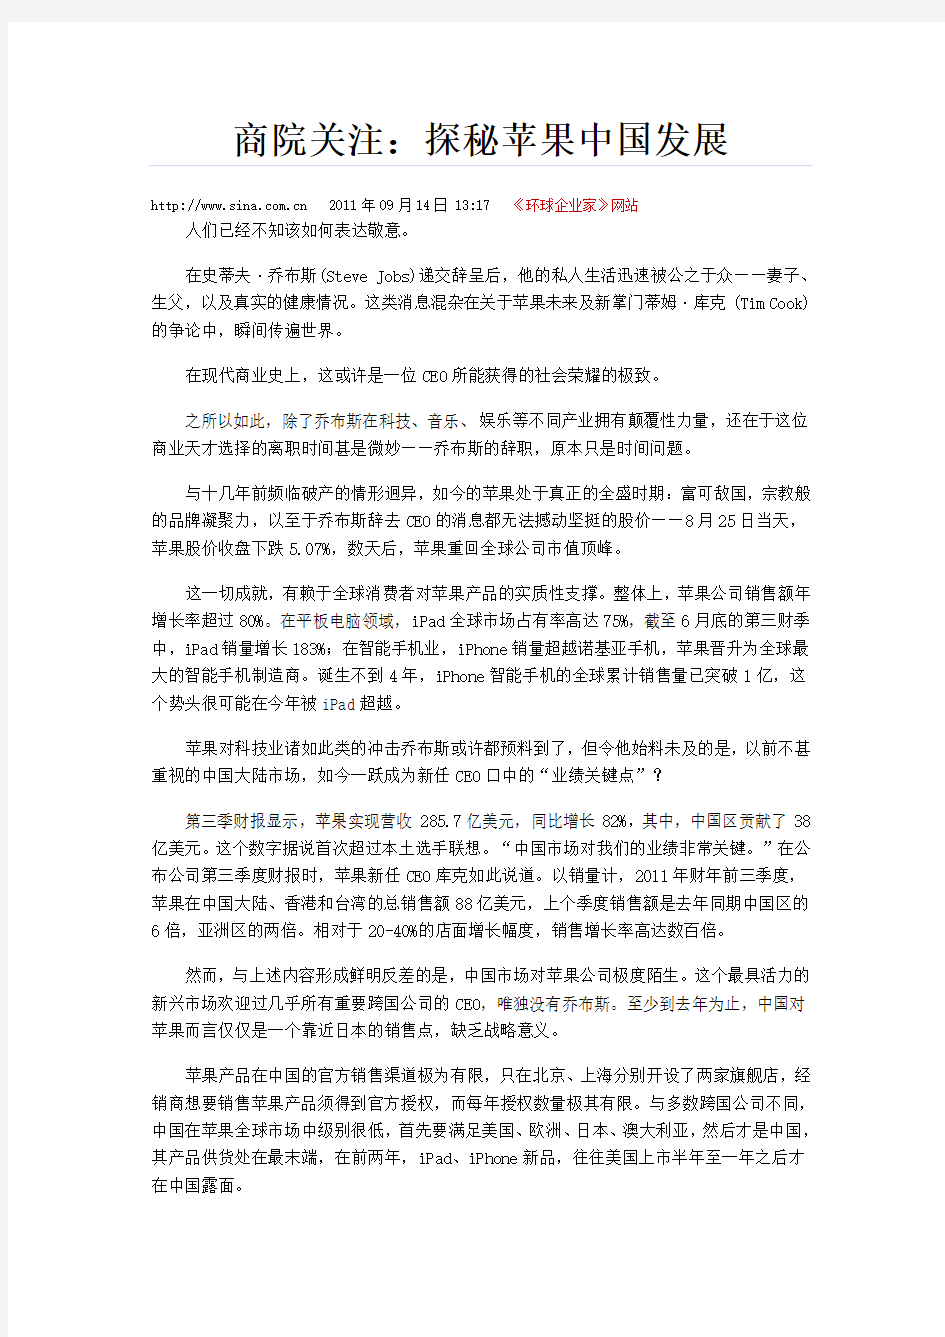 探秘苹果中国发展11-9-14 Microsoft Word 文档